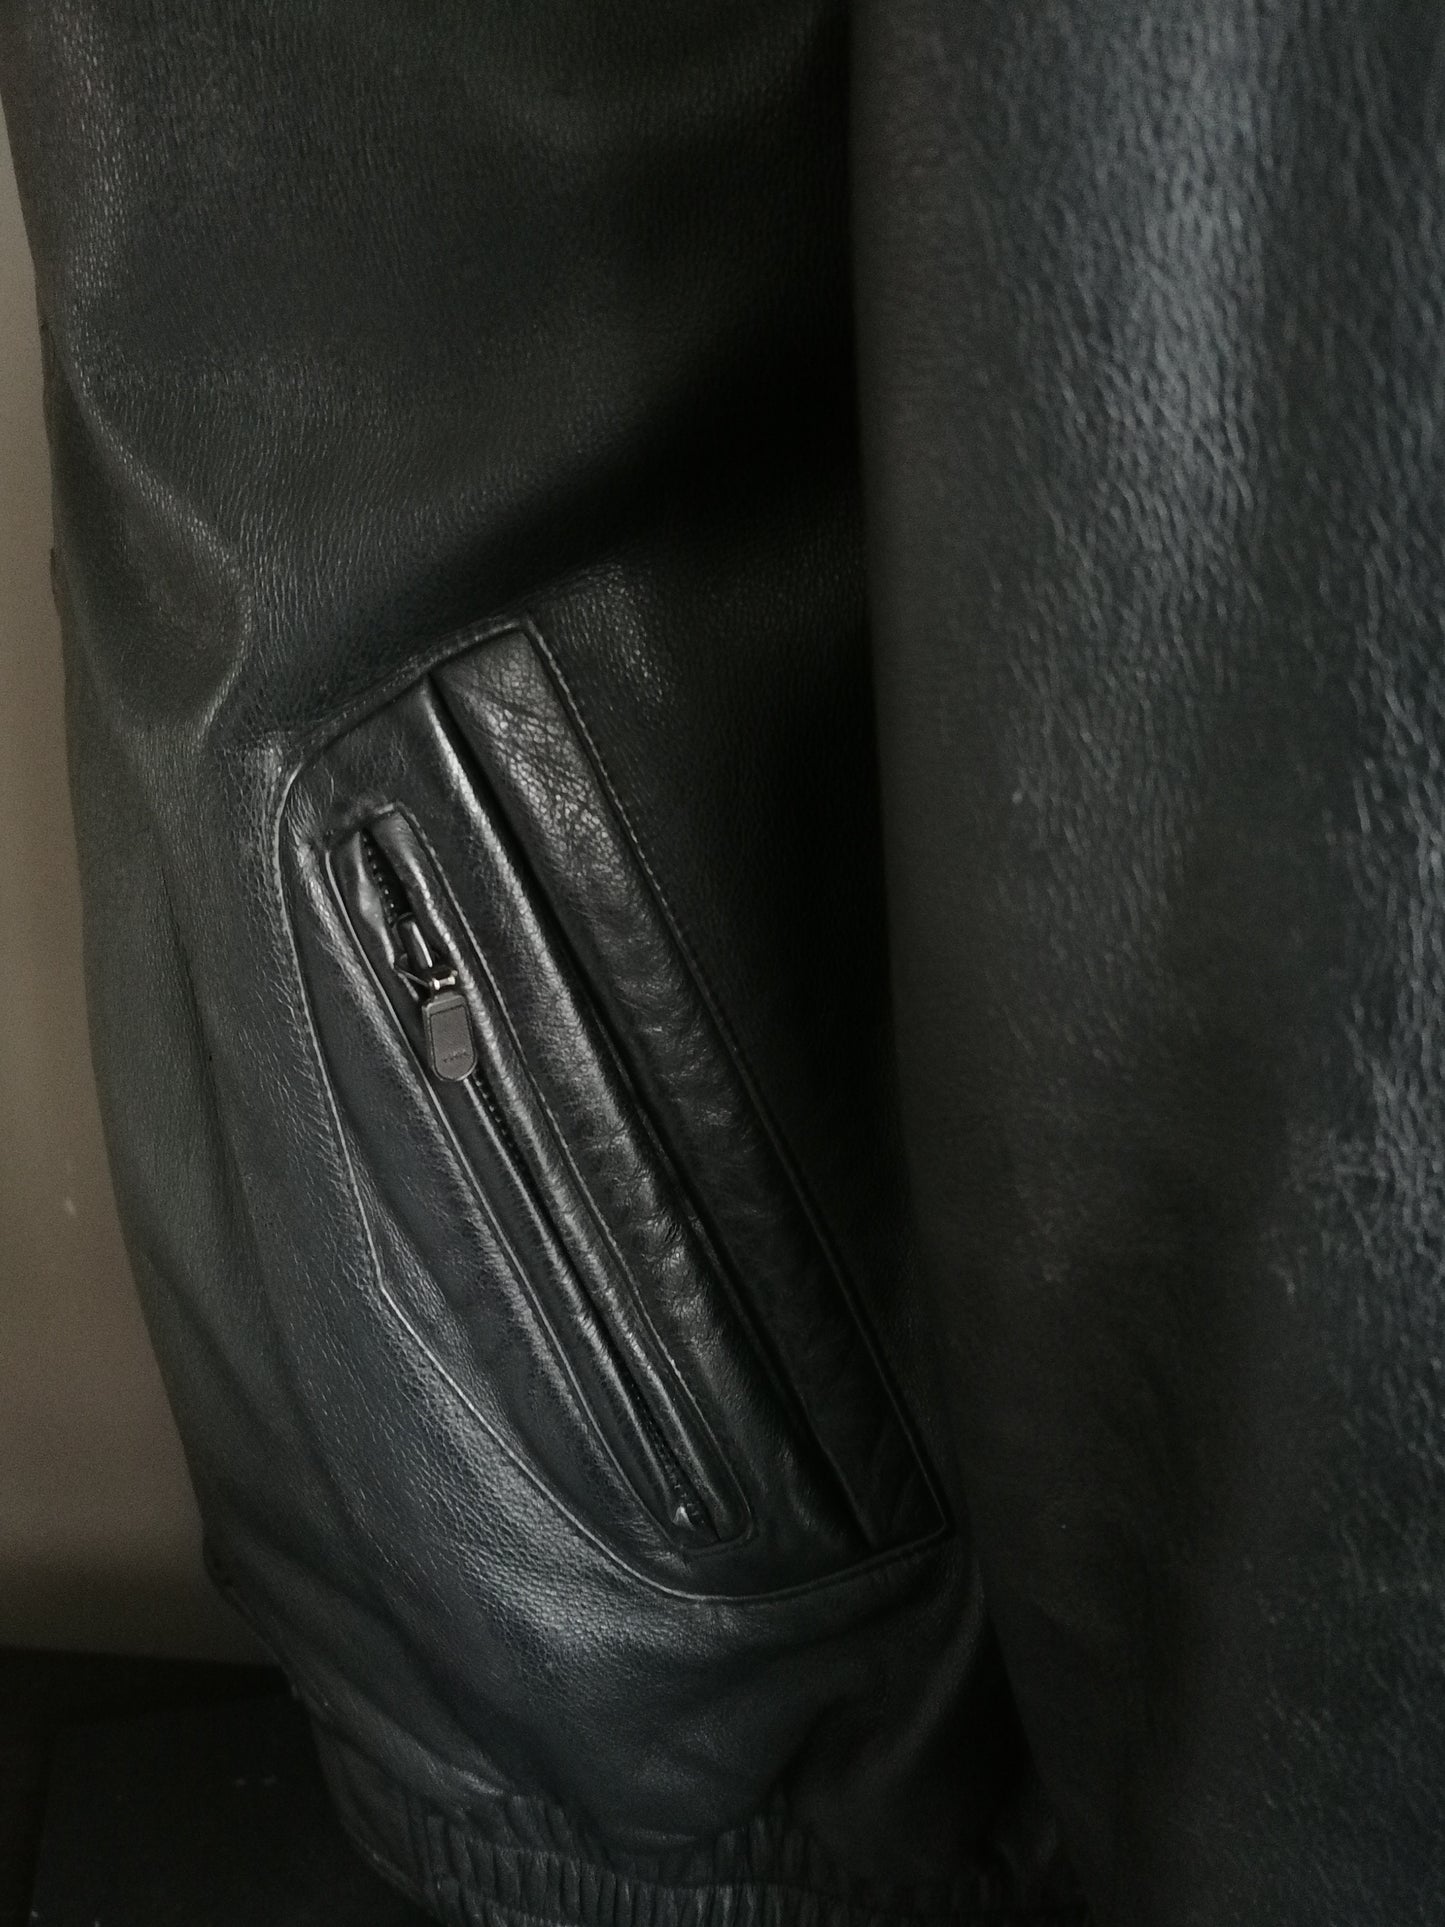 Chaqueta de cuero vintage. Forrado con doble cierre y bolsas. Color negro. Tamaño 56 / xl.